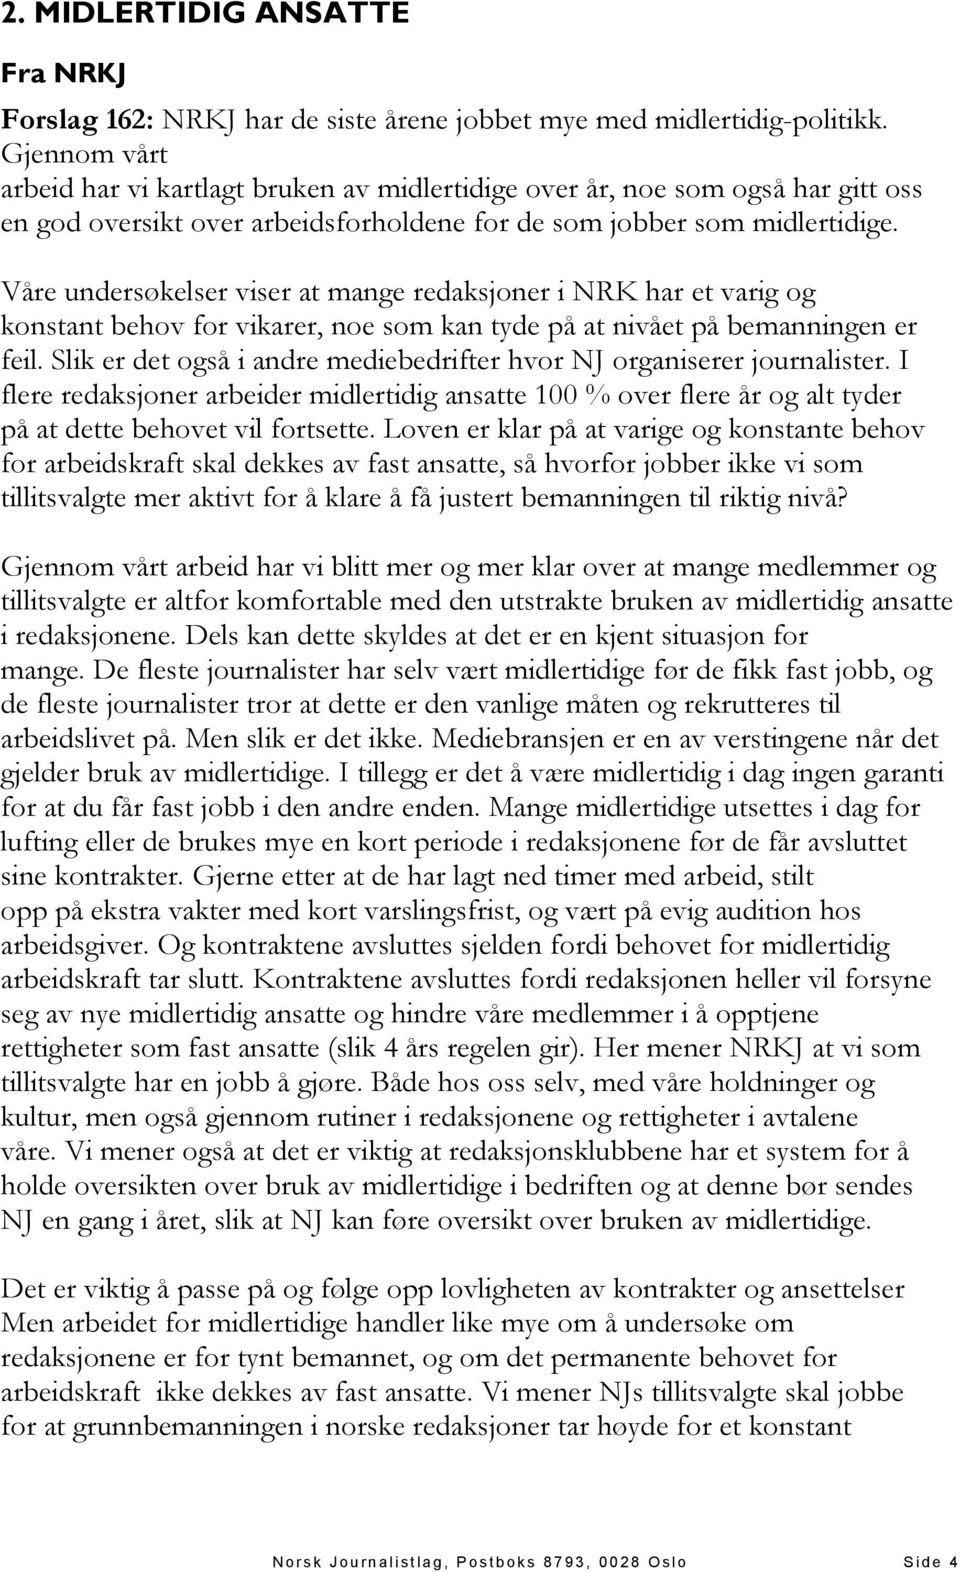 Våre undersøkelser viser at mange redaksjoner i NRK har et varig og konstant behov for vikarer, noe som kan tyde på at nivået på bemanningen er feil.